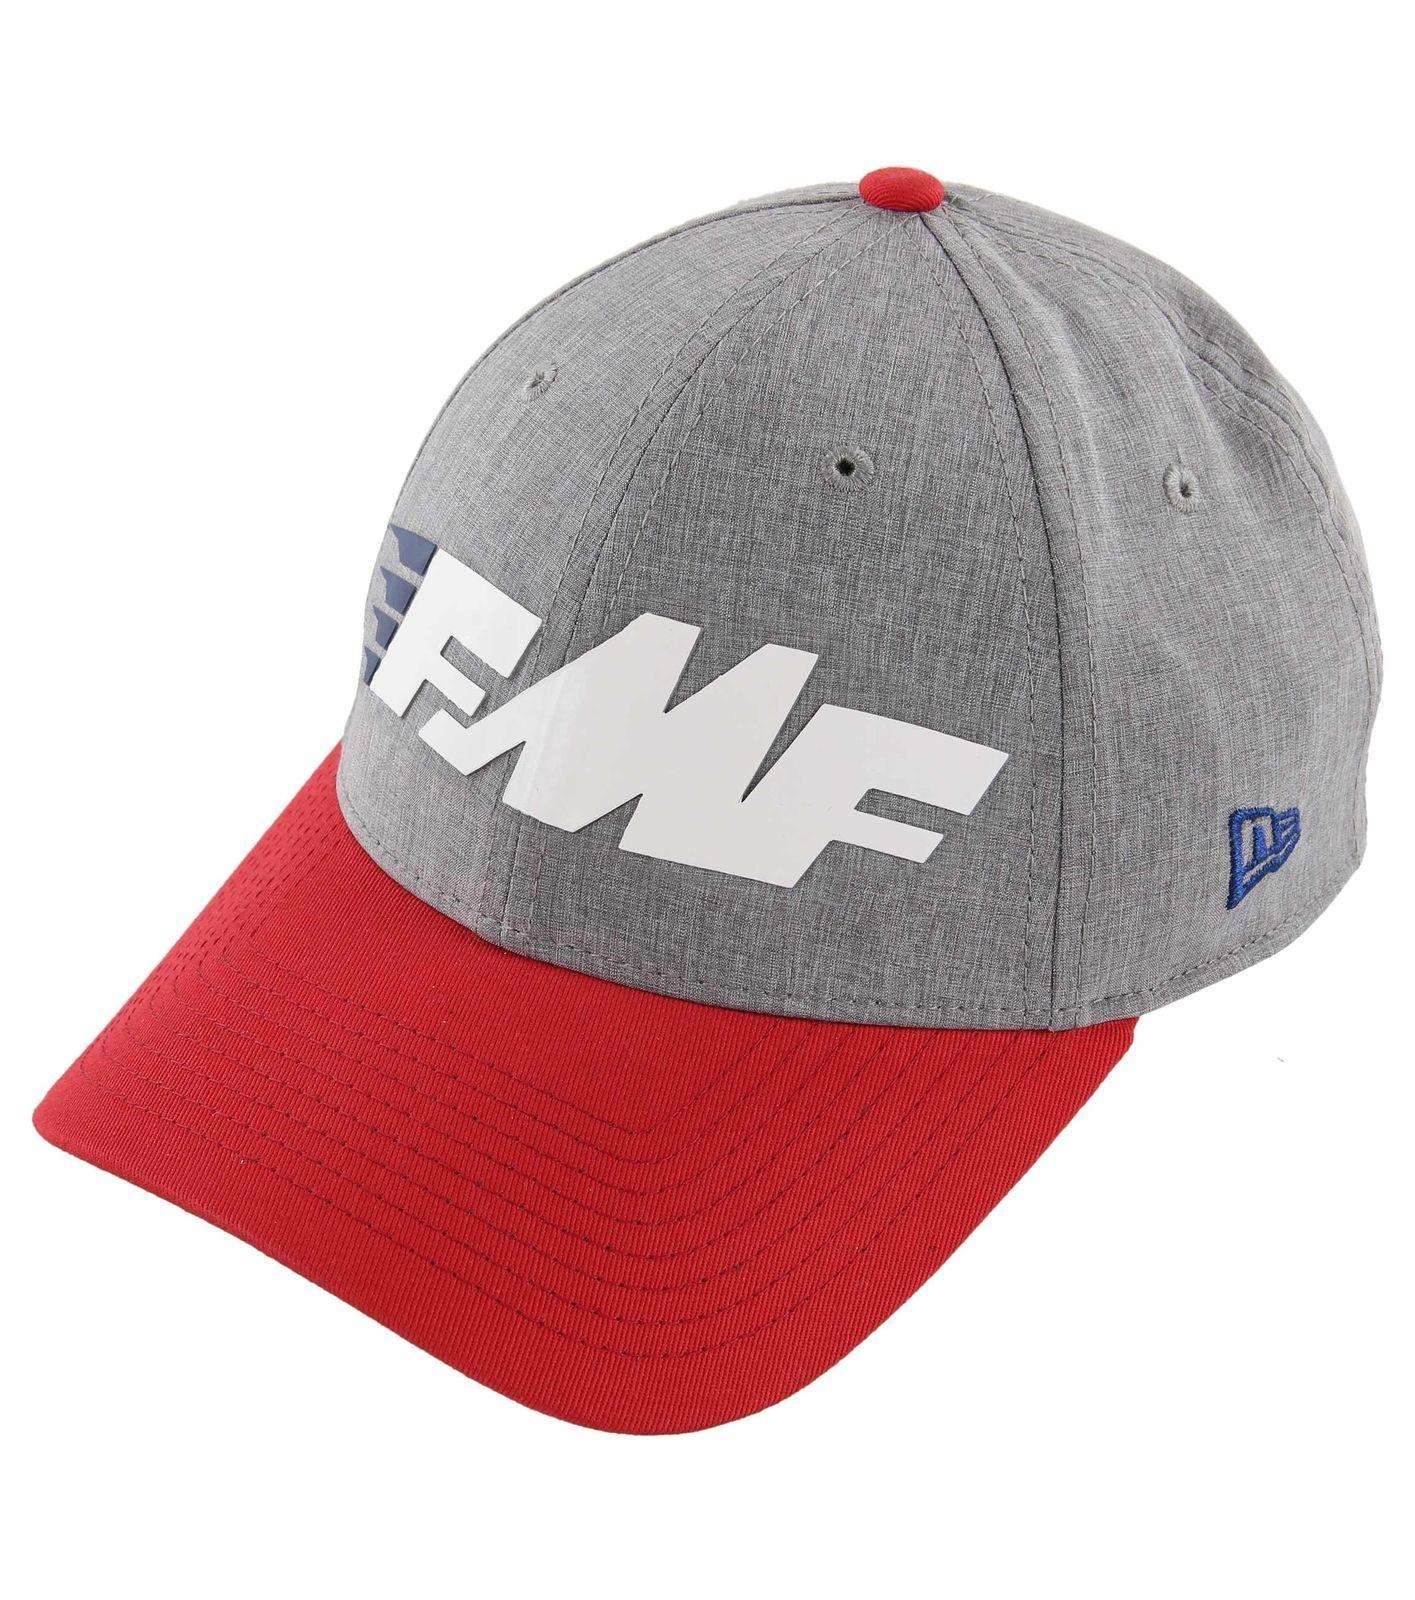 Sleek Racing Logo - FMF Racing Size Men's Sleek Snapback Hat One Size Racing C81b8c